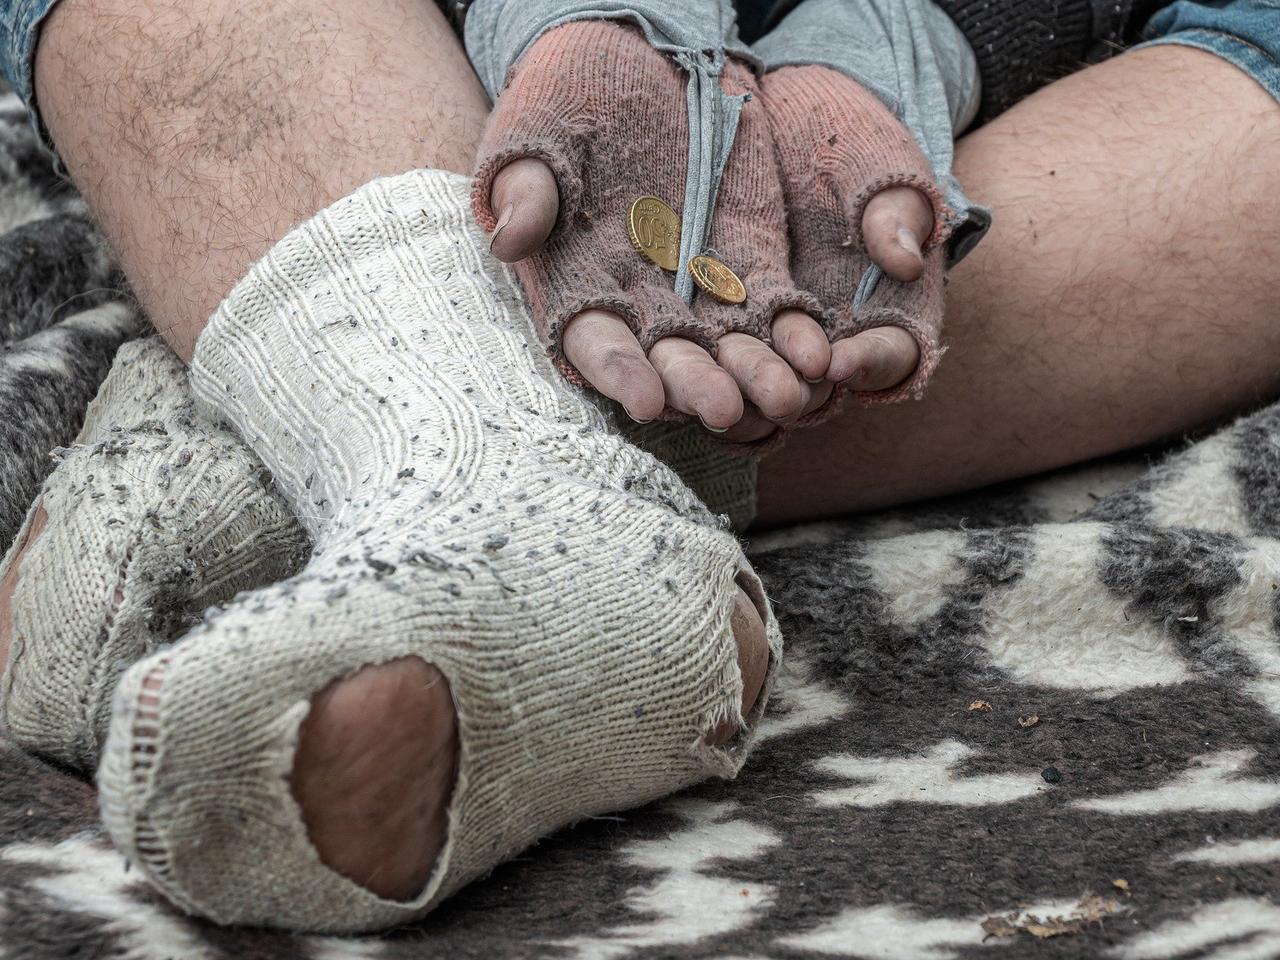 Potrzebne ciepłe ubrania i żywność. Dąbrowskie Stowarzyszenie Rodzin w Kryzysie prowadzi zbiórkę dla najuboższych i bezdomnych